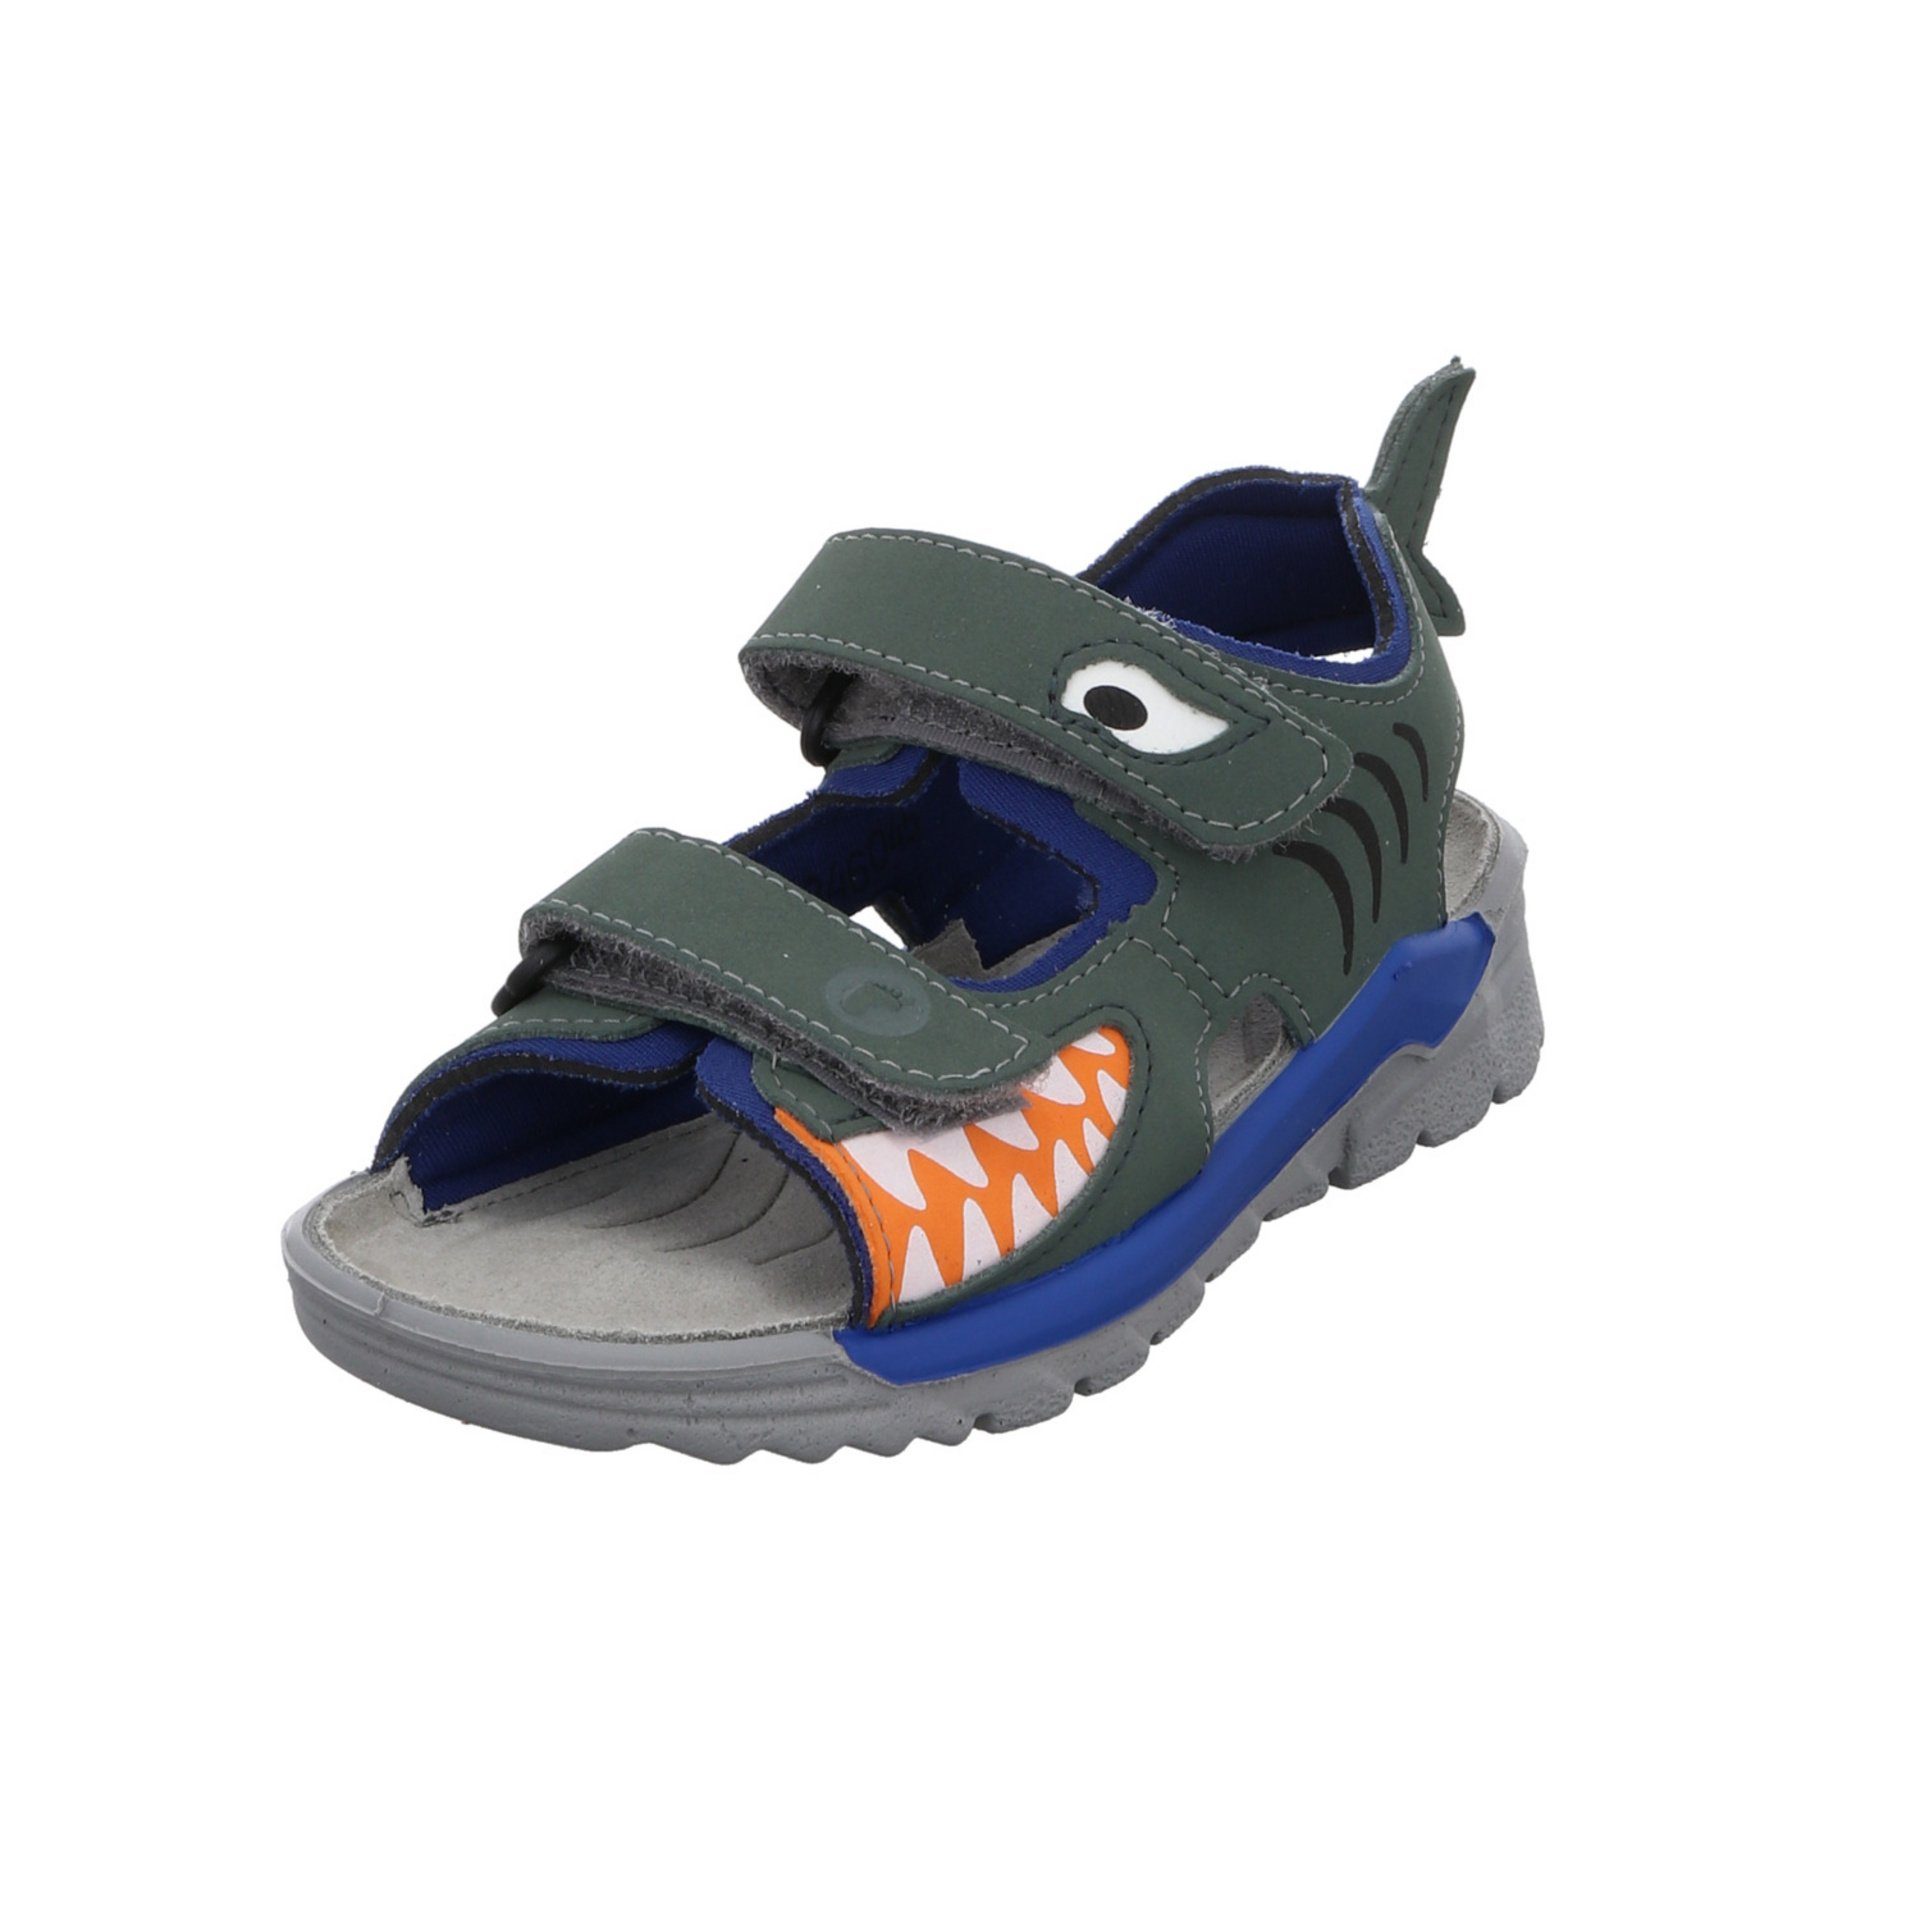 Ricosta Jungen Sandalen Schuhe Shark Sandale Kinderschuhe Sandale Textil grün